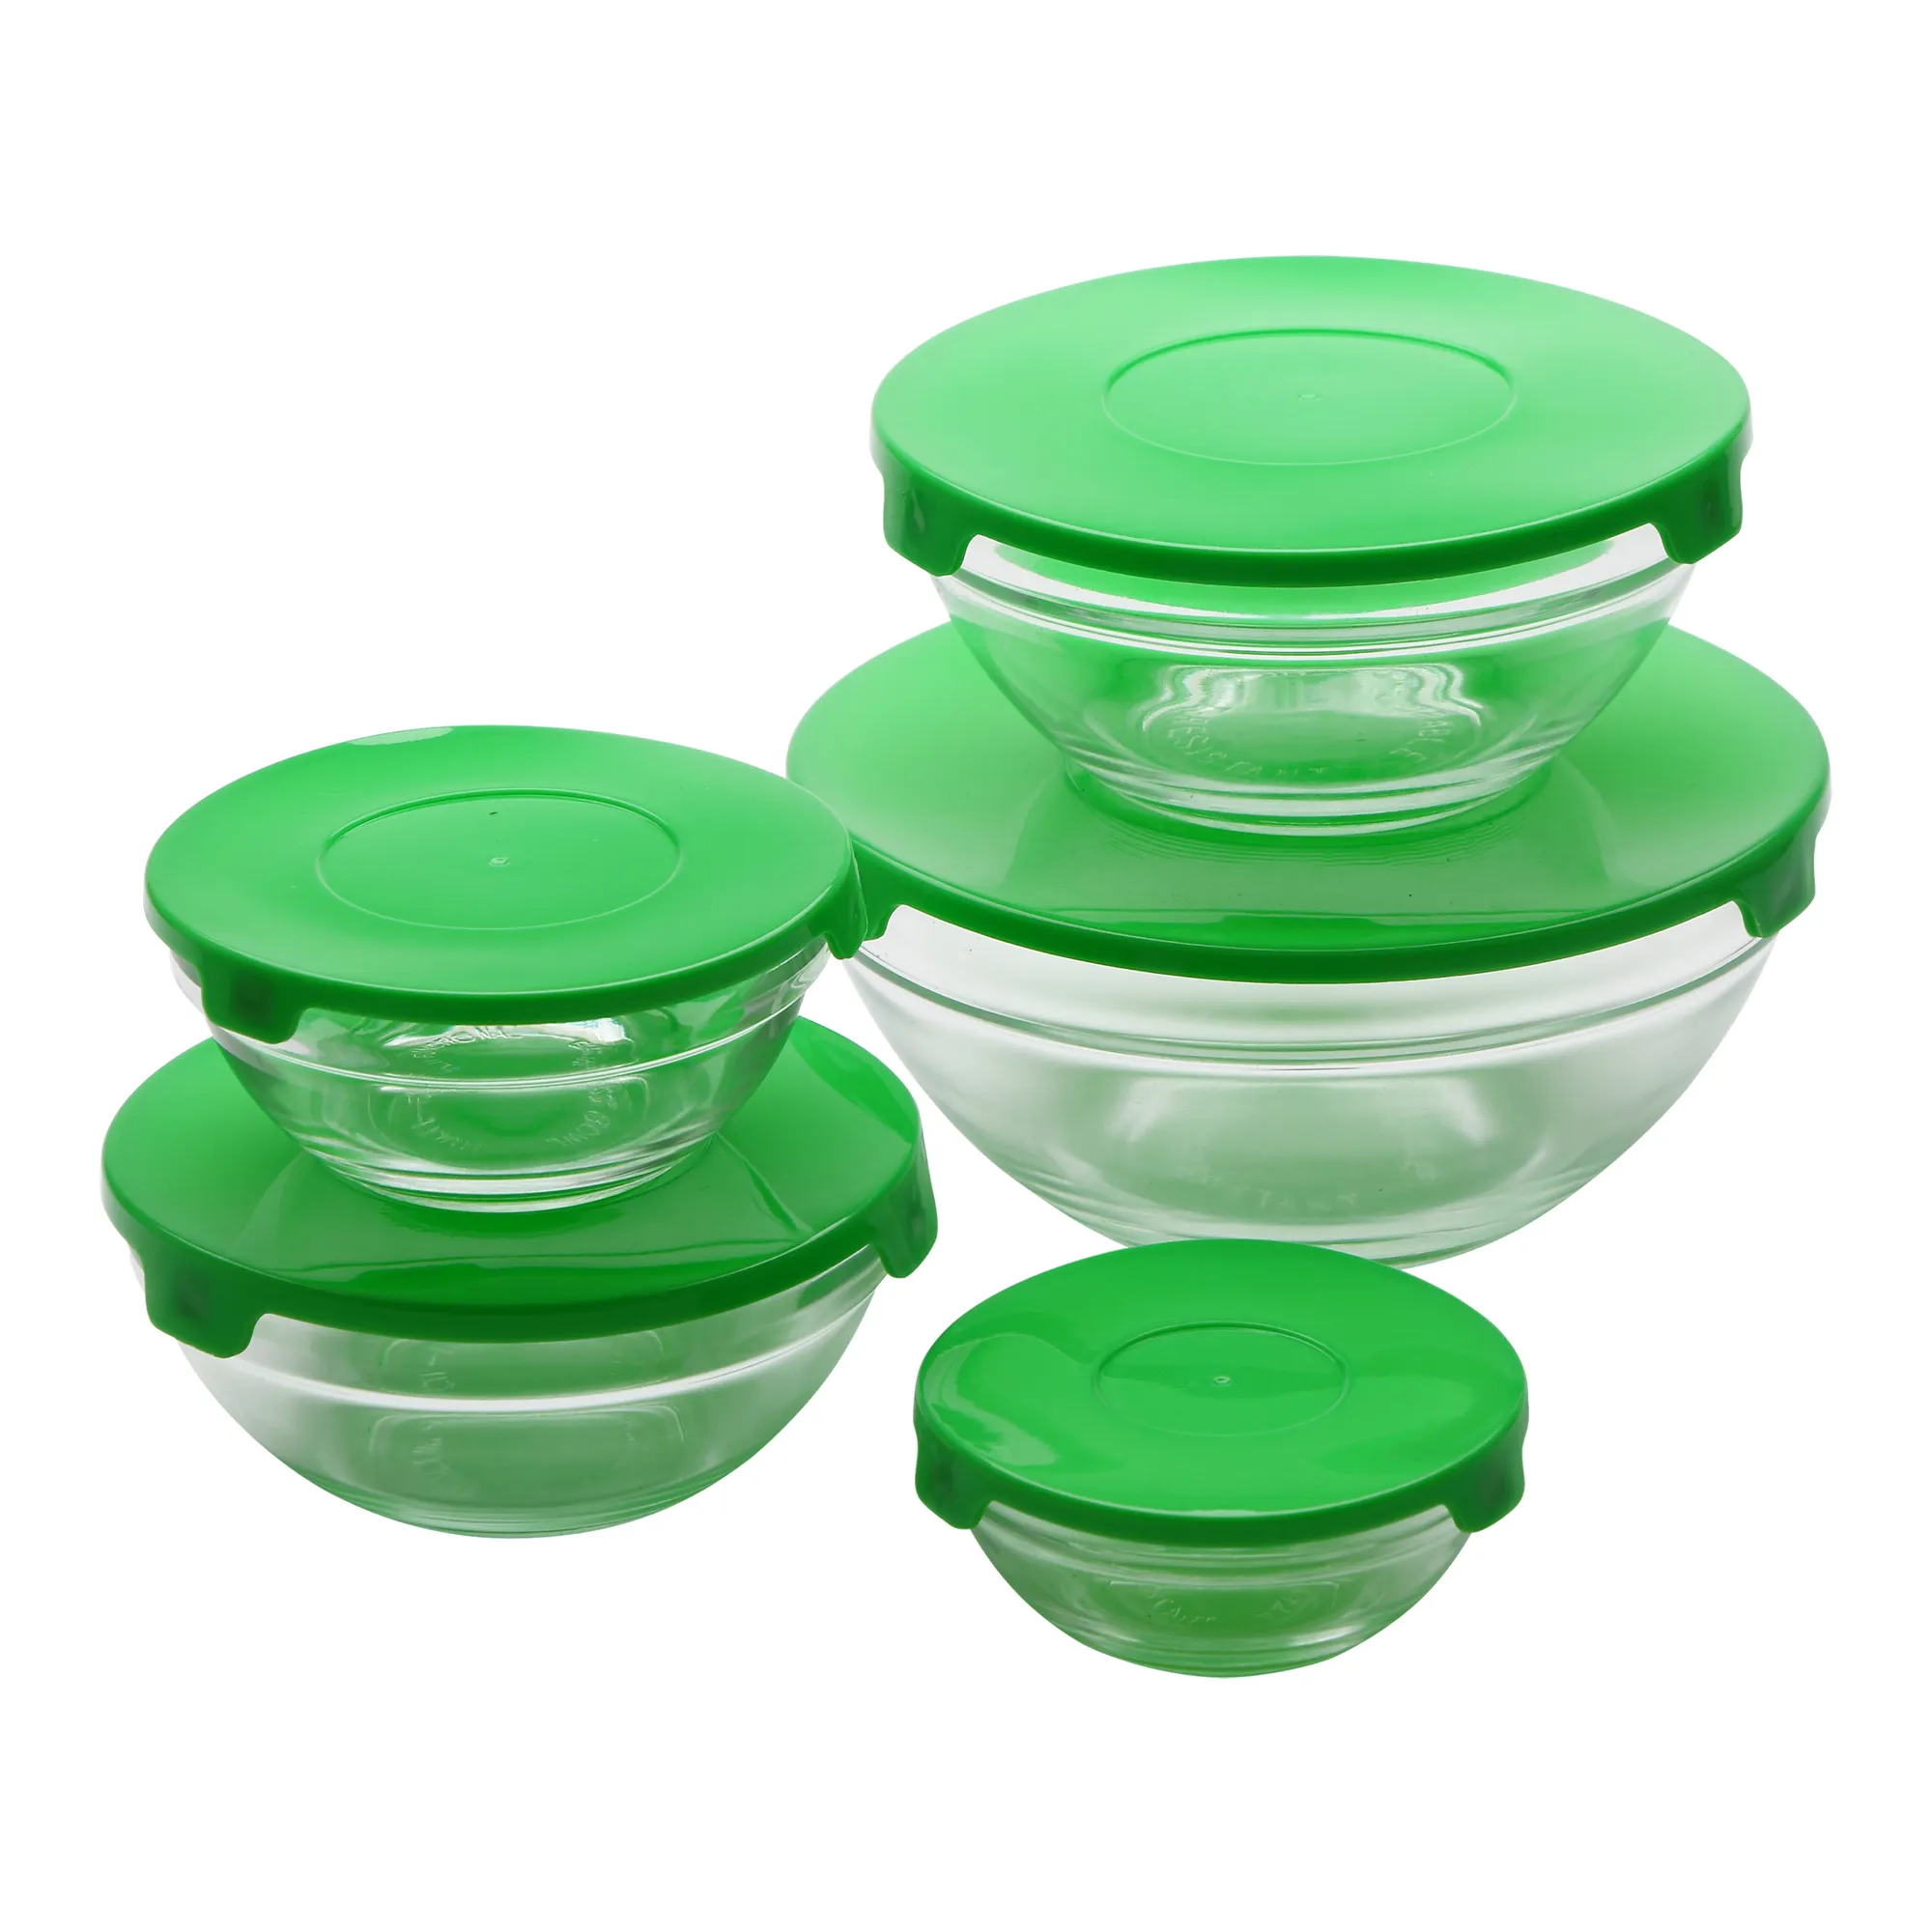 SAN IGNACIO Energy set de 5 fiambreras de cristal con tapa de 150, 200, 350, 500 y 900 mililitros en color verde - 1